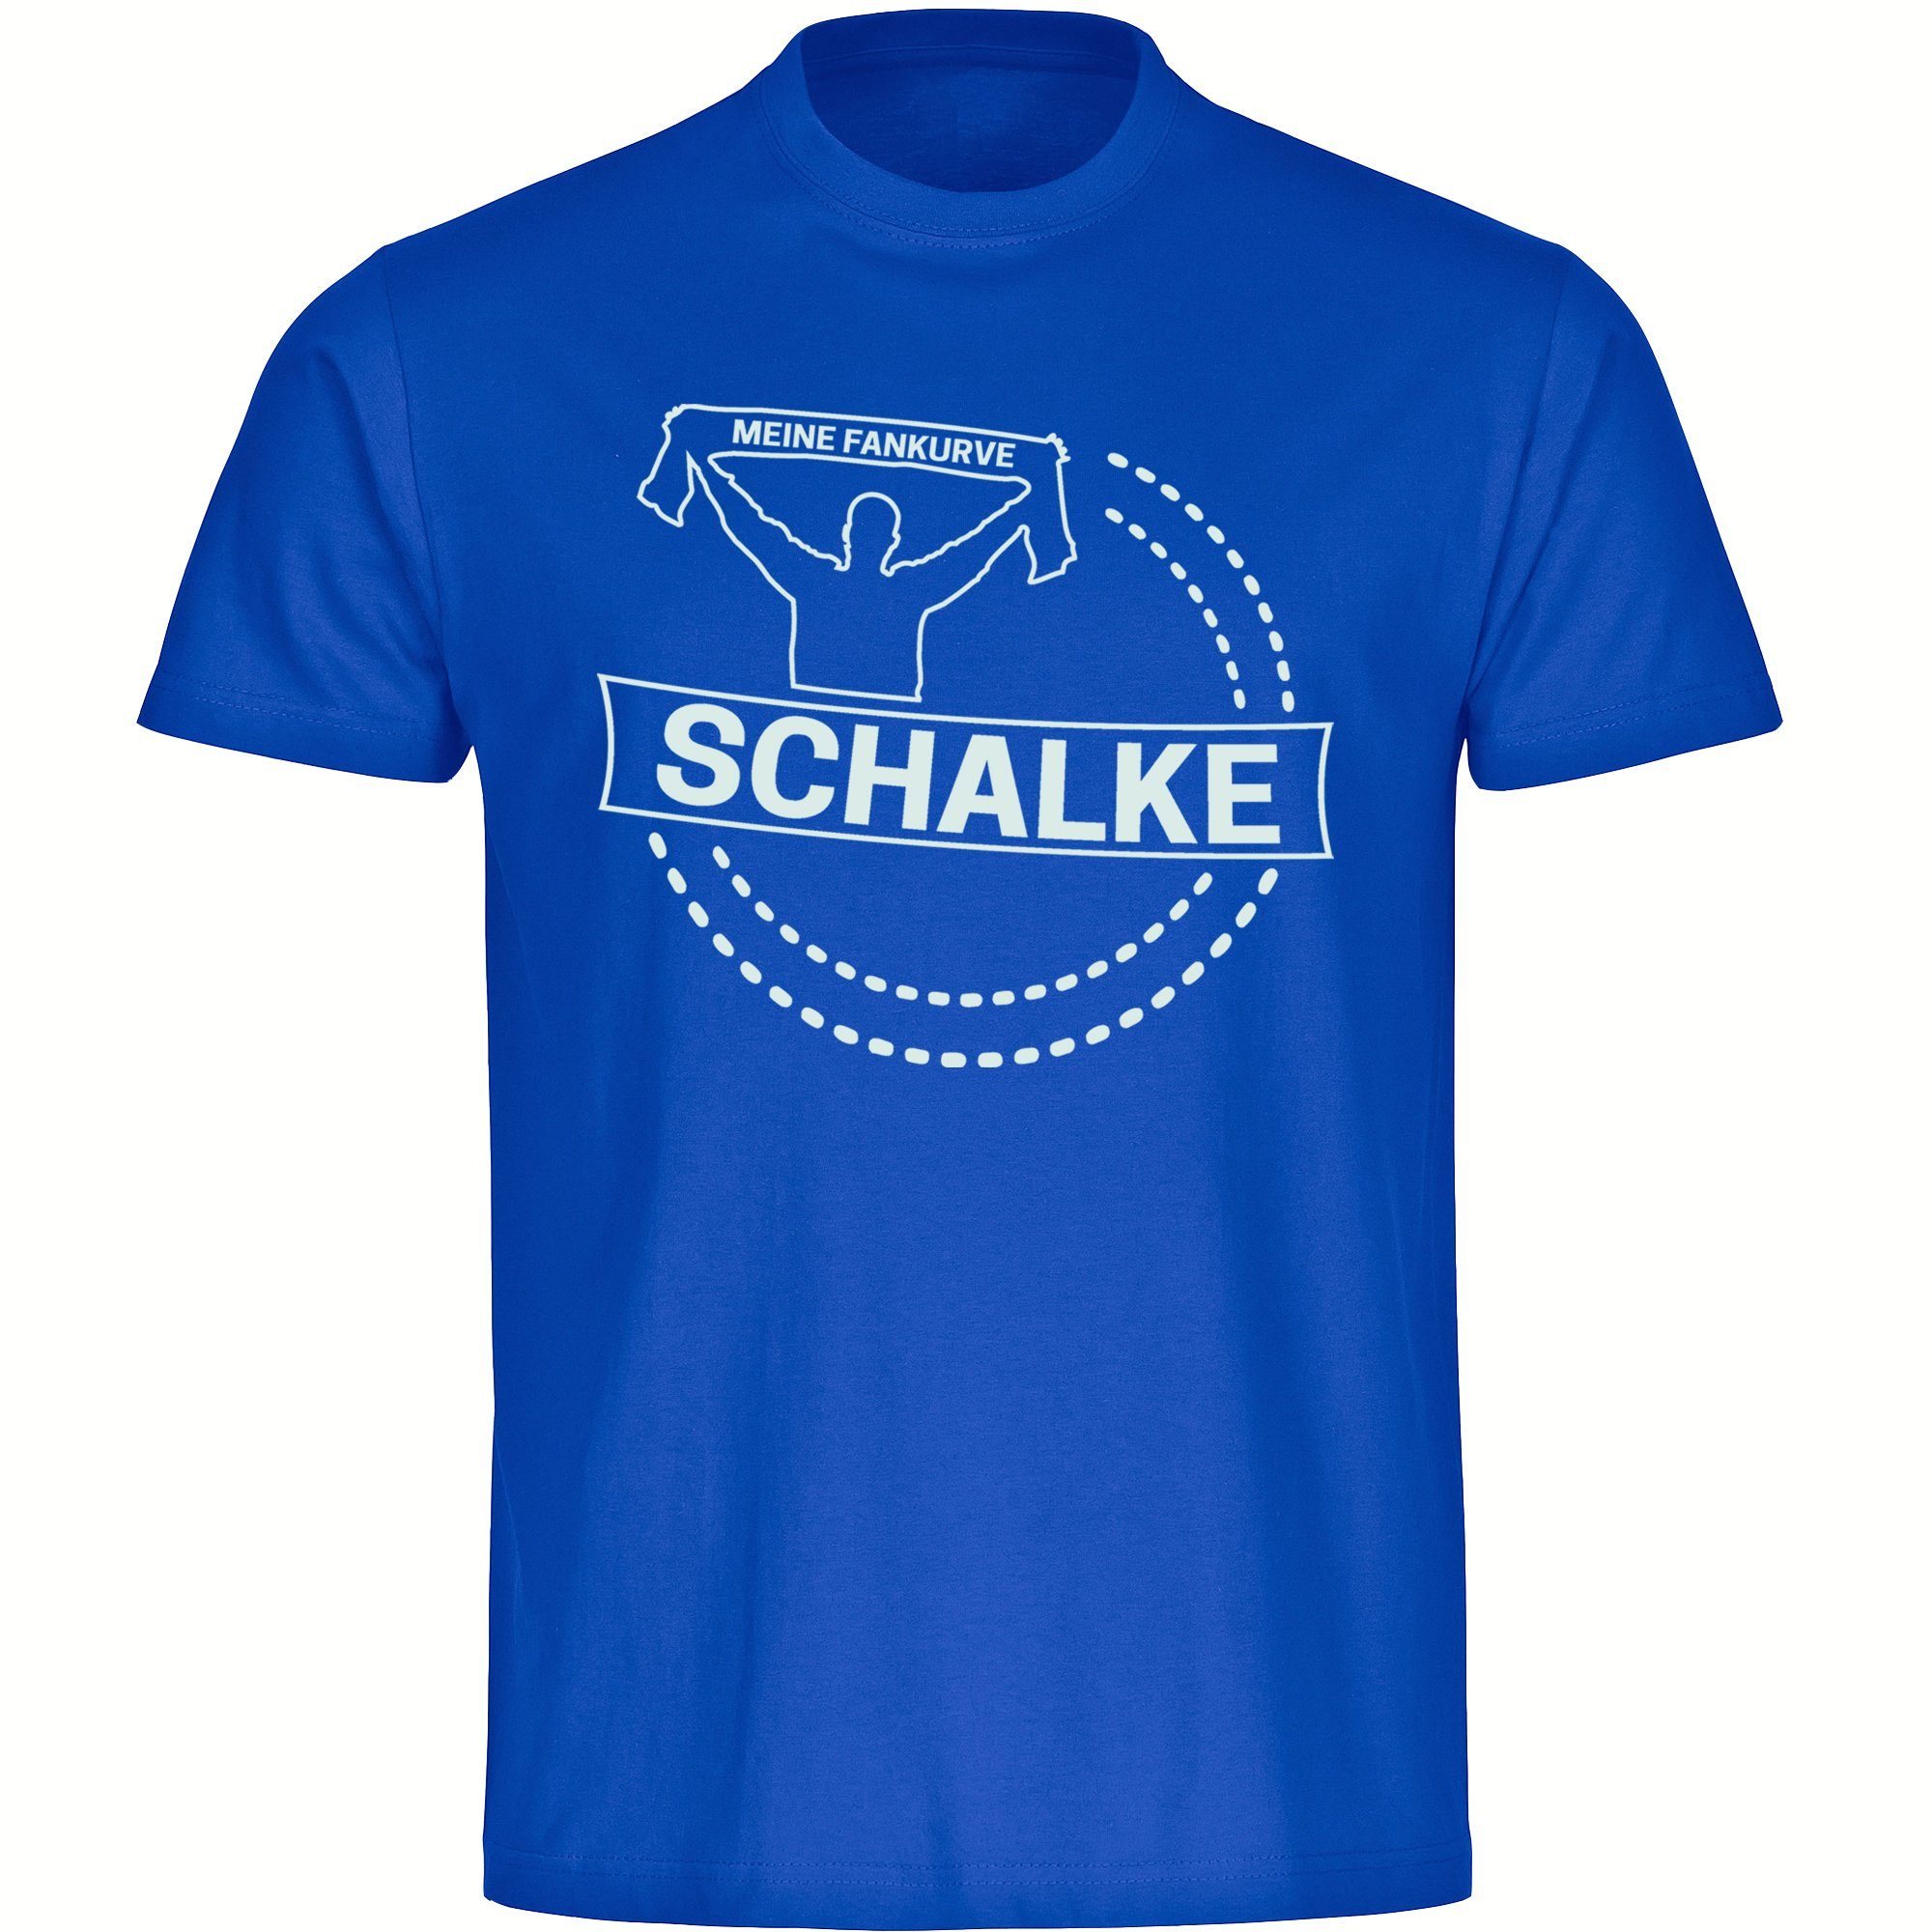 multifanshop T-Shirt Herren Schalke - Meine Fankurve - Männer